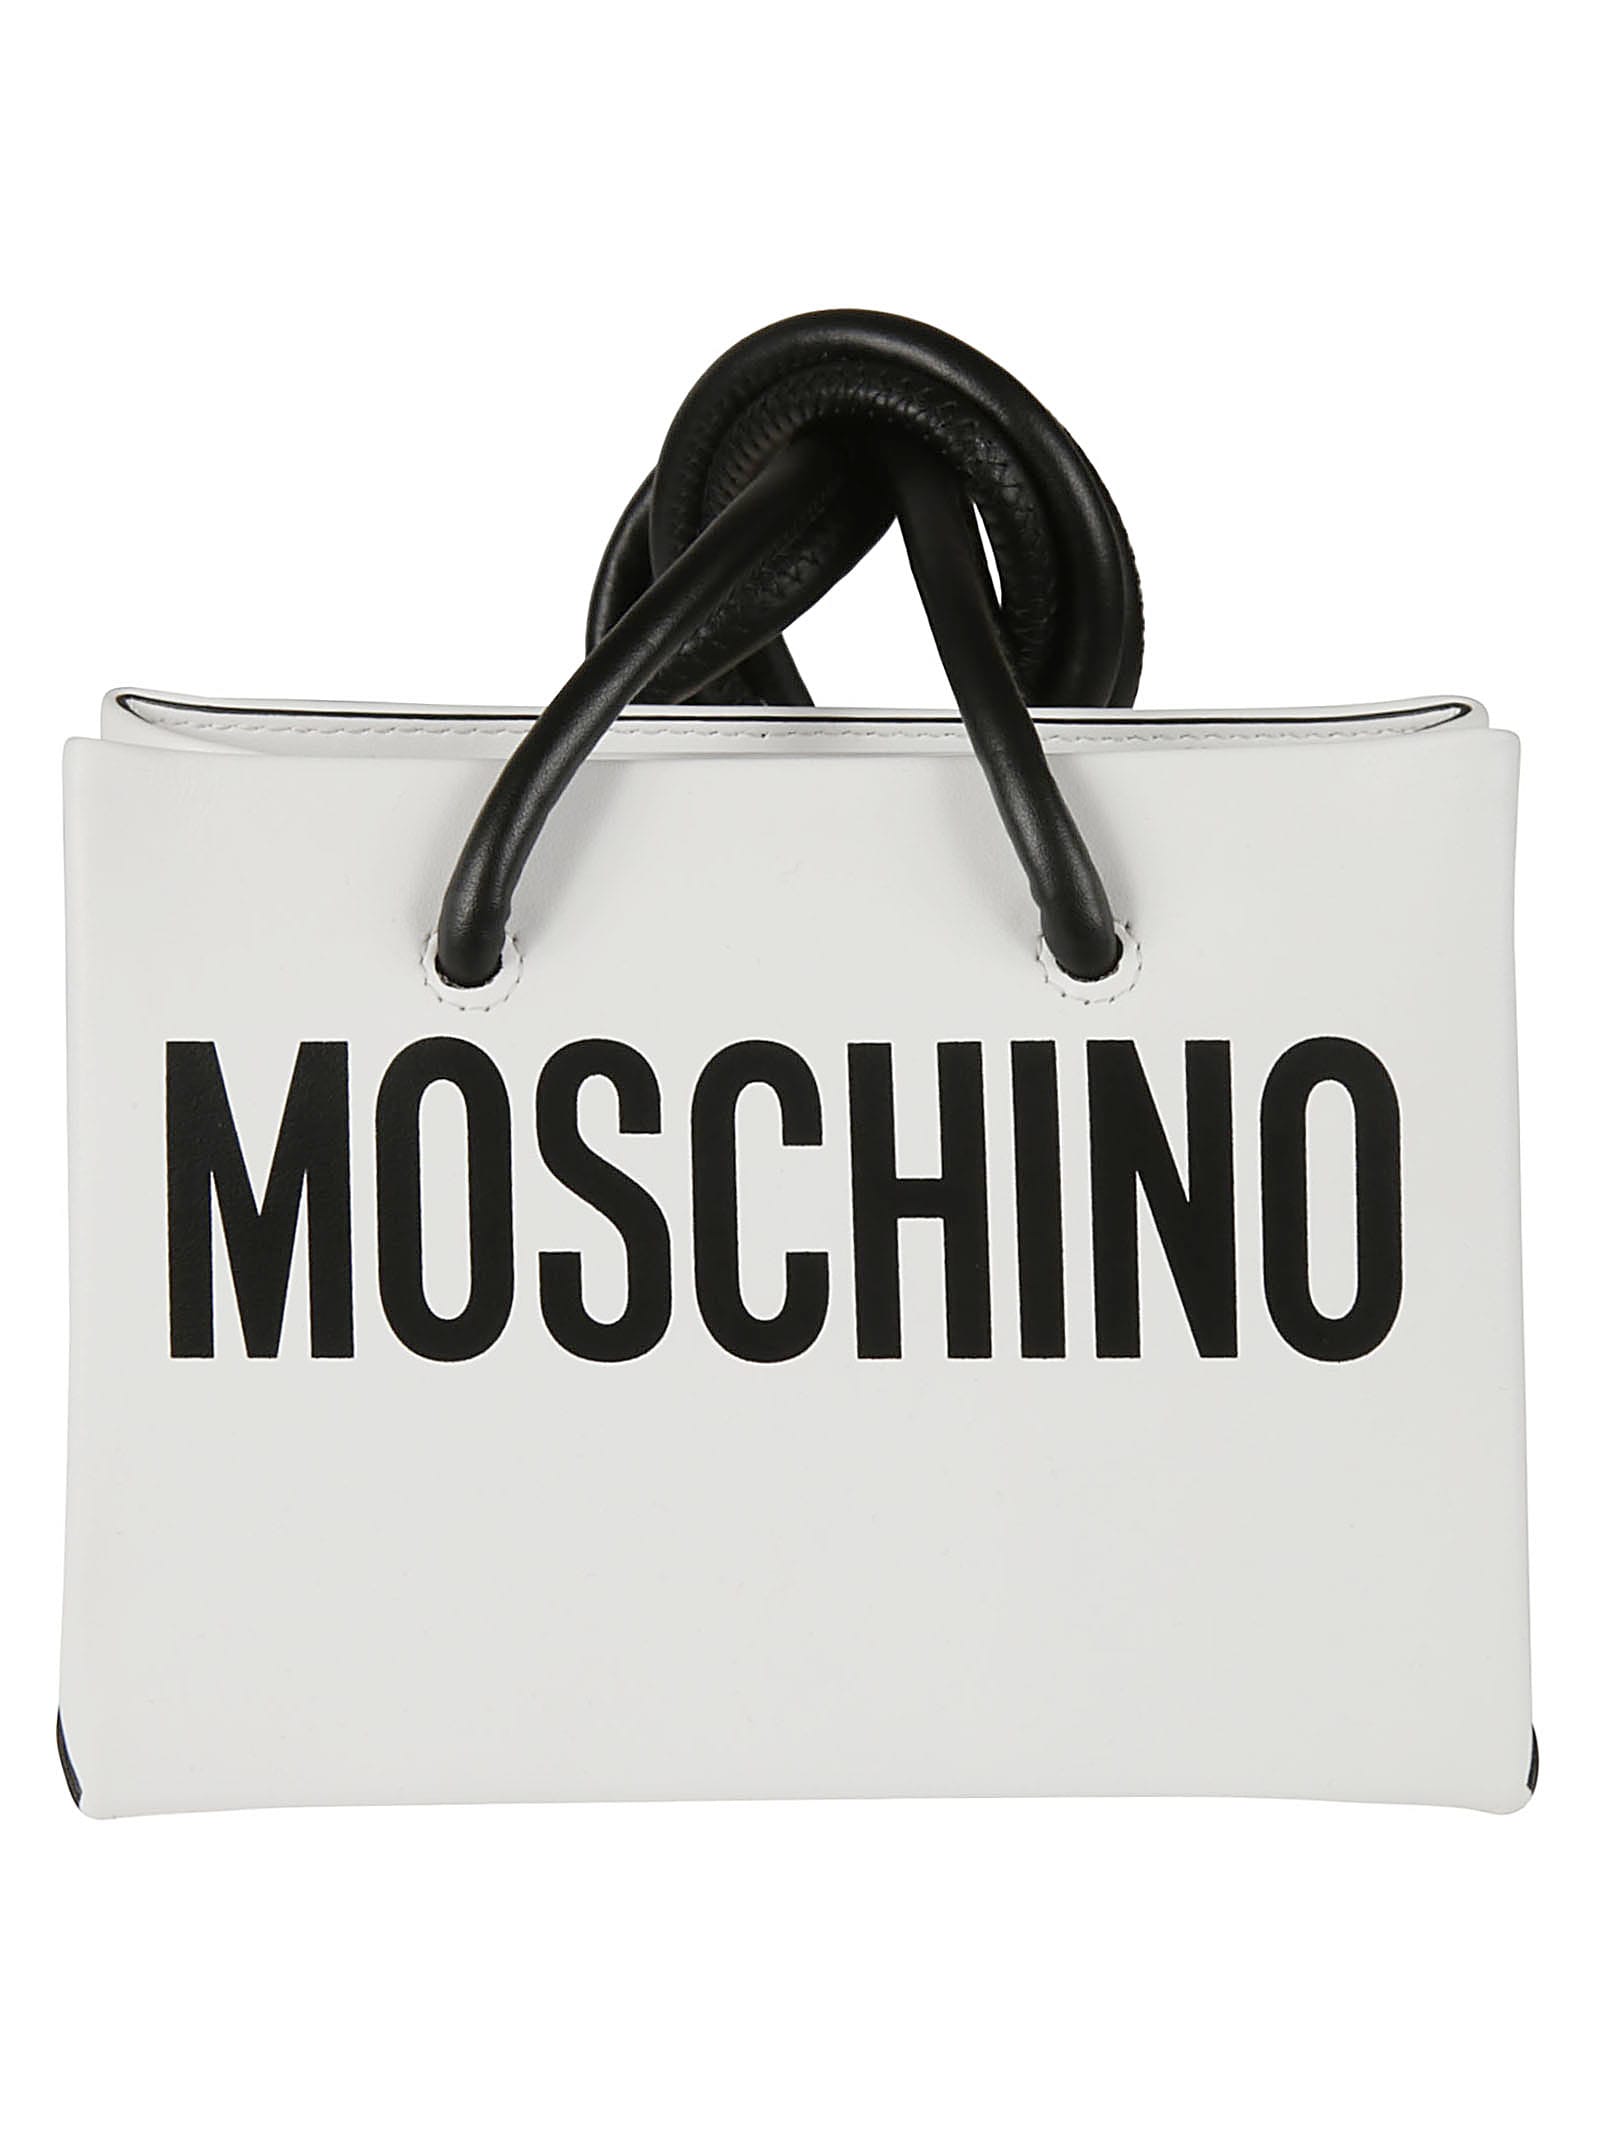 Moschino Logo Print Shoulder Bag